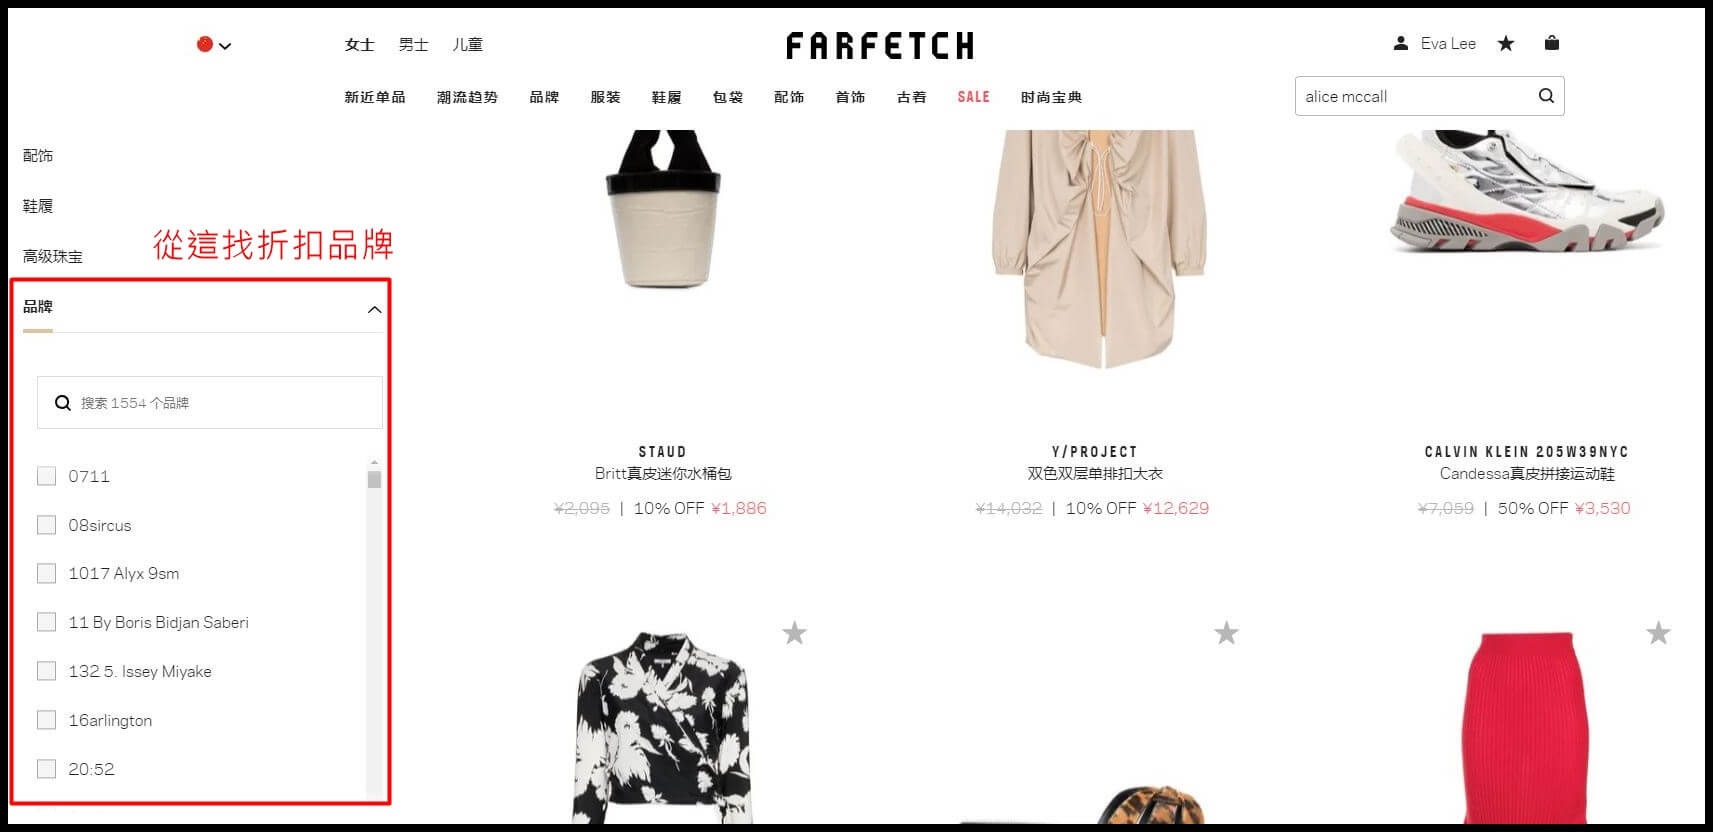 Farfetch購物教學懶人包：教你買便宜，2019年關稅/免運/退貨/信用卡